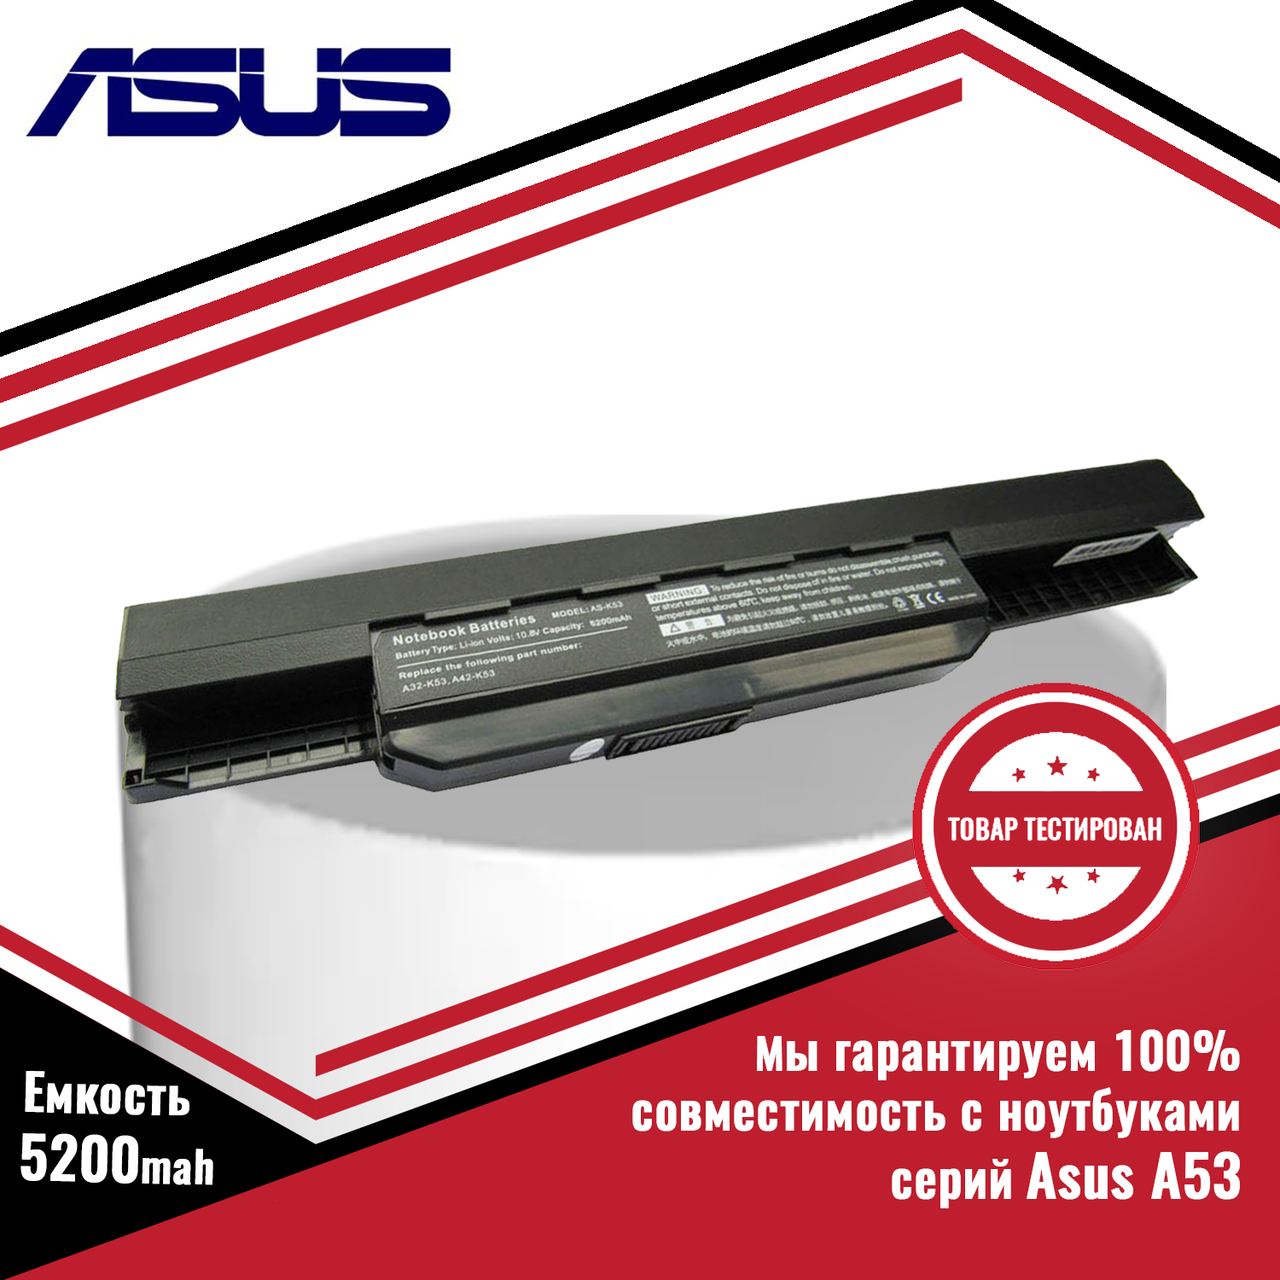 Аккумулятор (батарея) для ноутбуков Asus A53, A53B, A53E, A53F, A53J, A53S, A53T, A53U (A32-K53) 10.8V 5200mAh